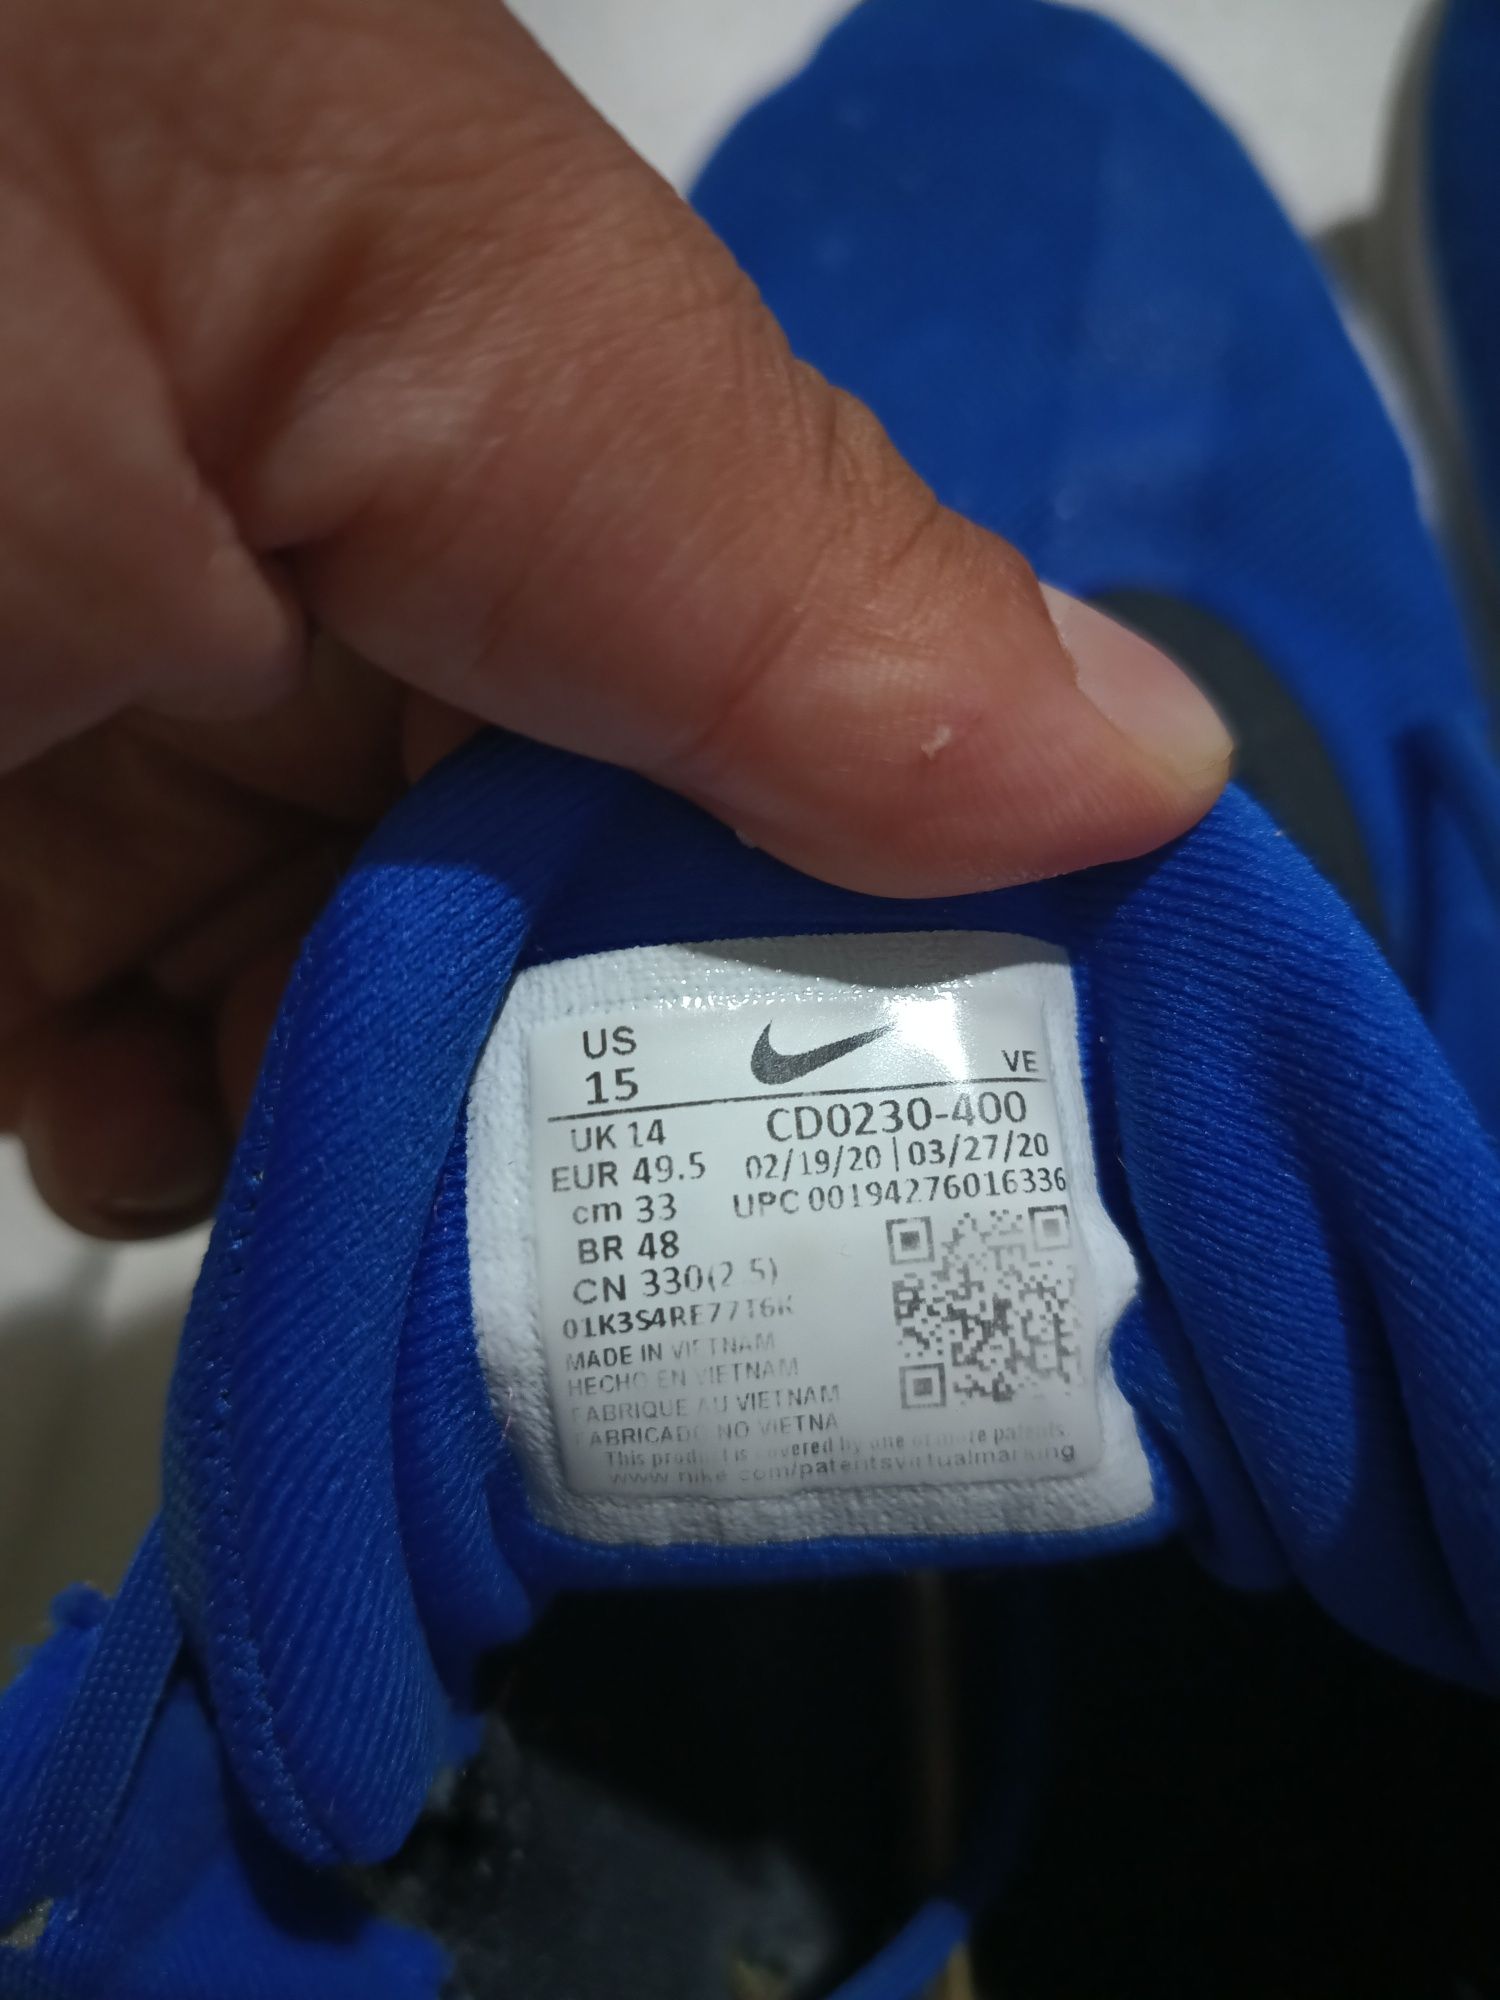 Adidași Nike runnig măsură 49.5